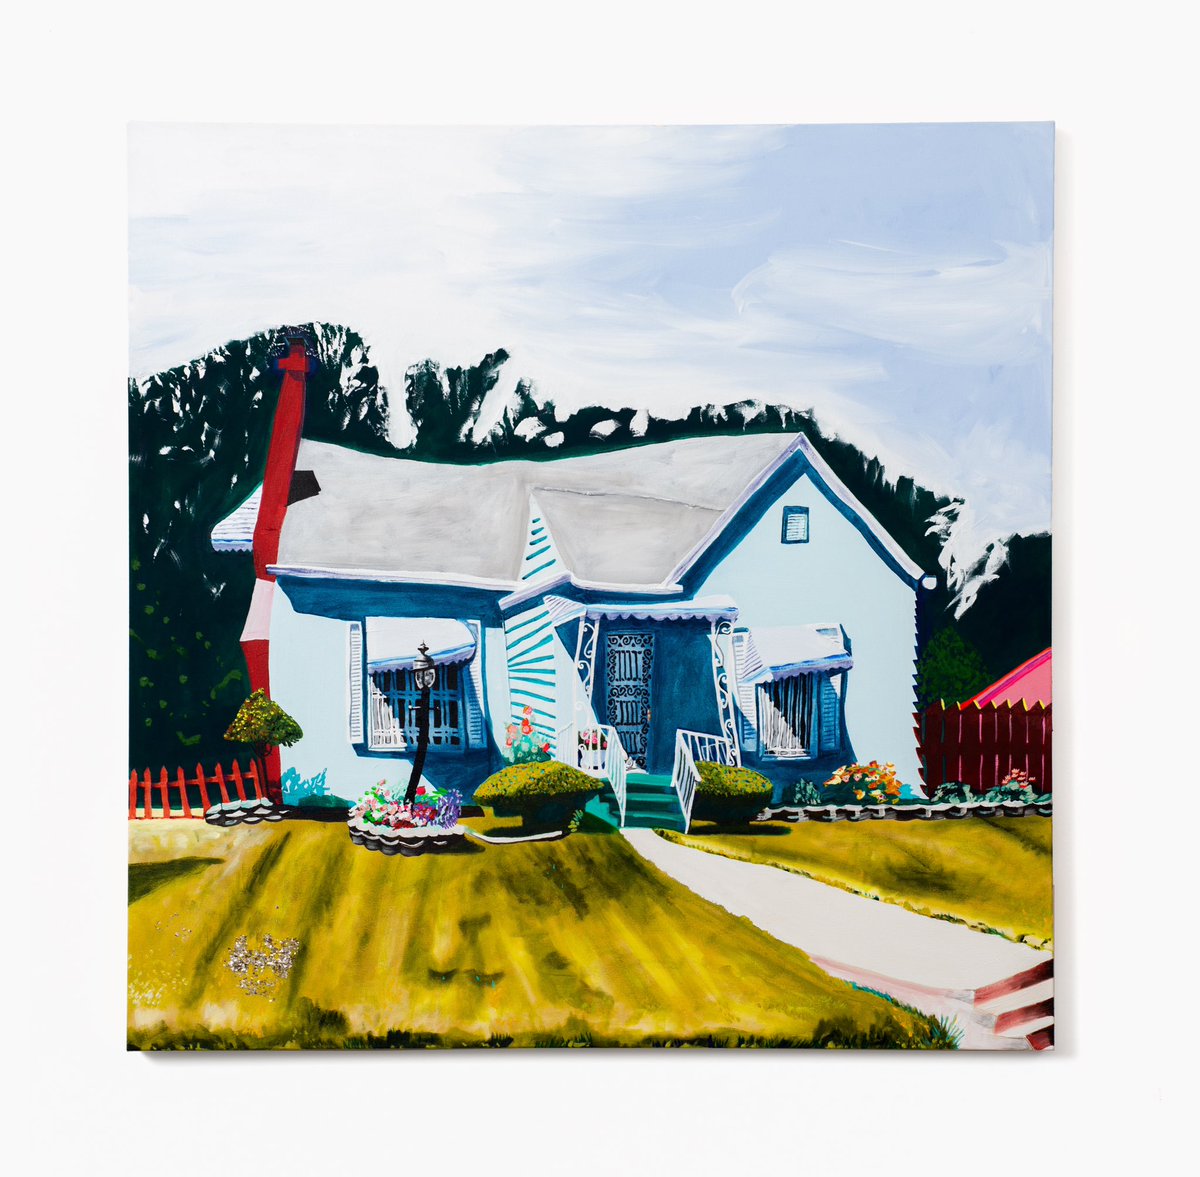 2023, acrylic and oil on canvas, 48” x 48” #gabriellegarland #artist #NewYorkCity #houseportrait #humanized #house